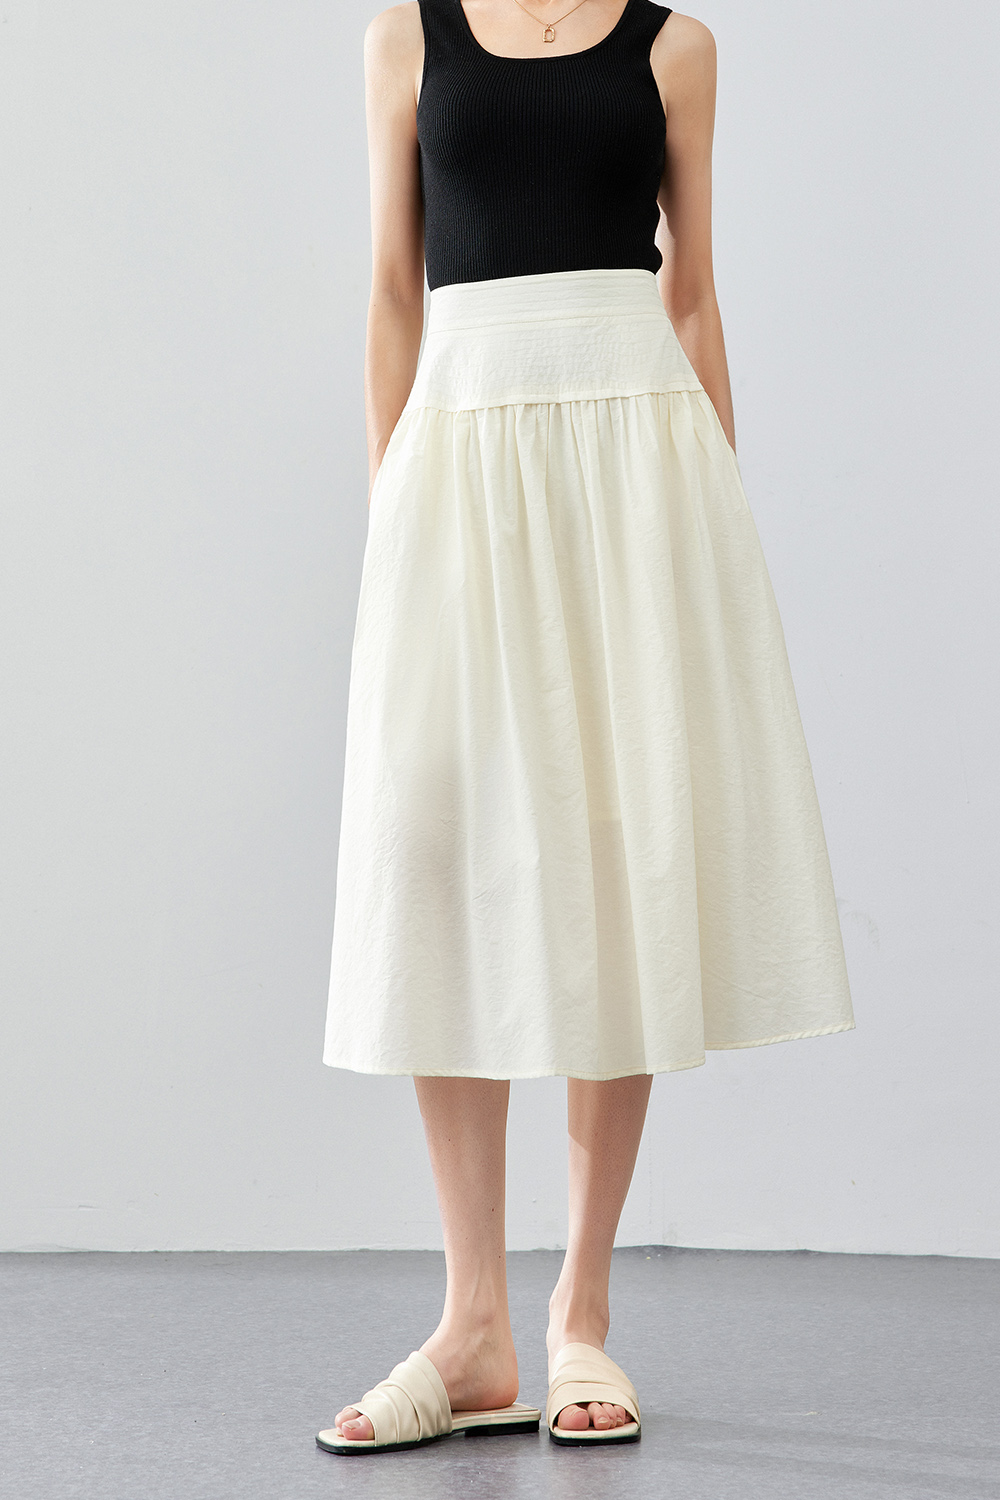 Cotton Fluffy Skirt